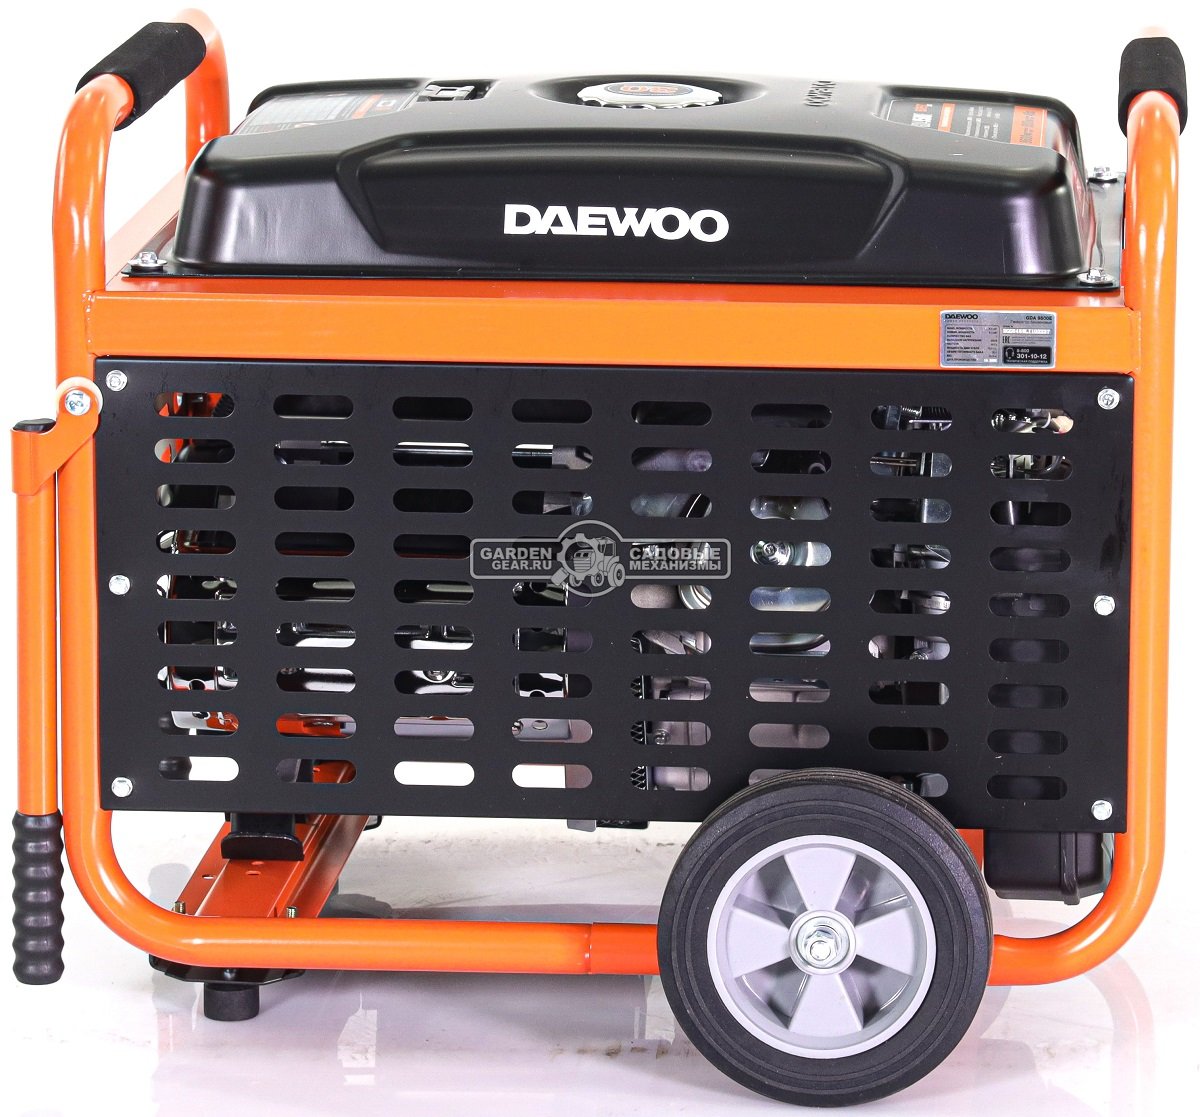 Бензиновый генератор Daewoo GDA 9500E (PRC, 460 см3, 8,0/8,6 кВт, электростартер, разъем ATS, колеса, 30 л, 93,4 кг.)